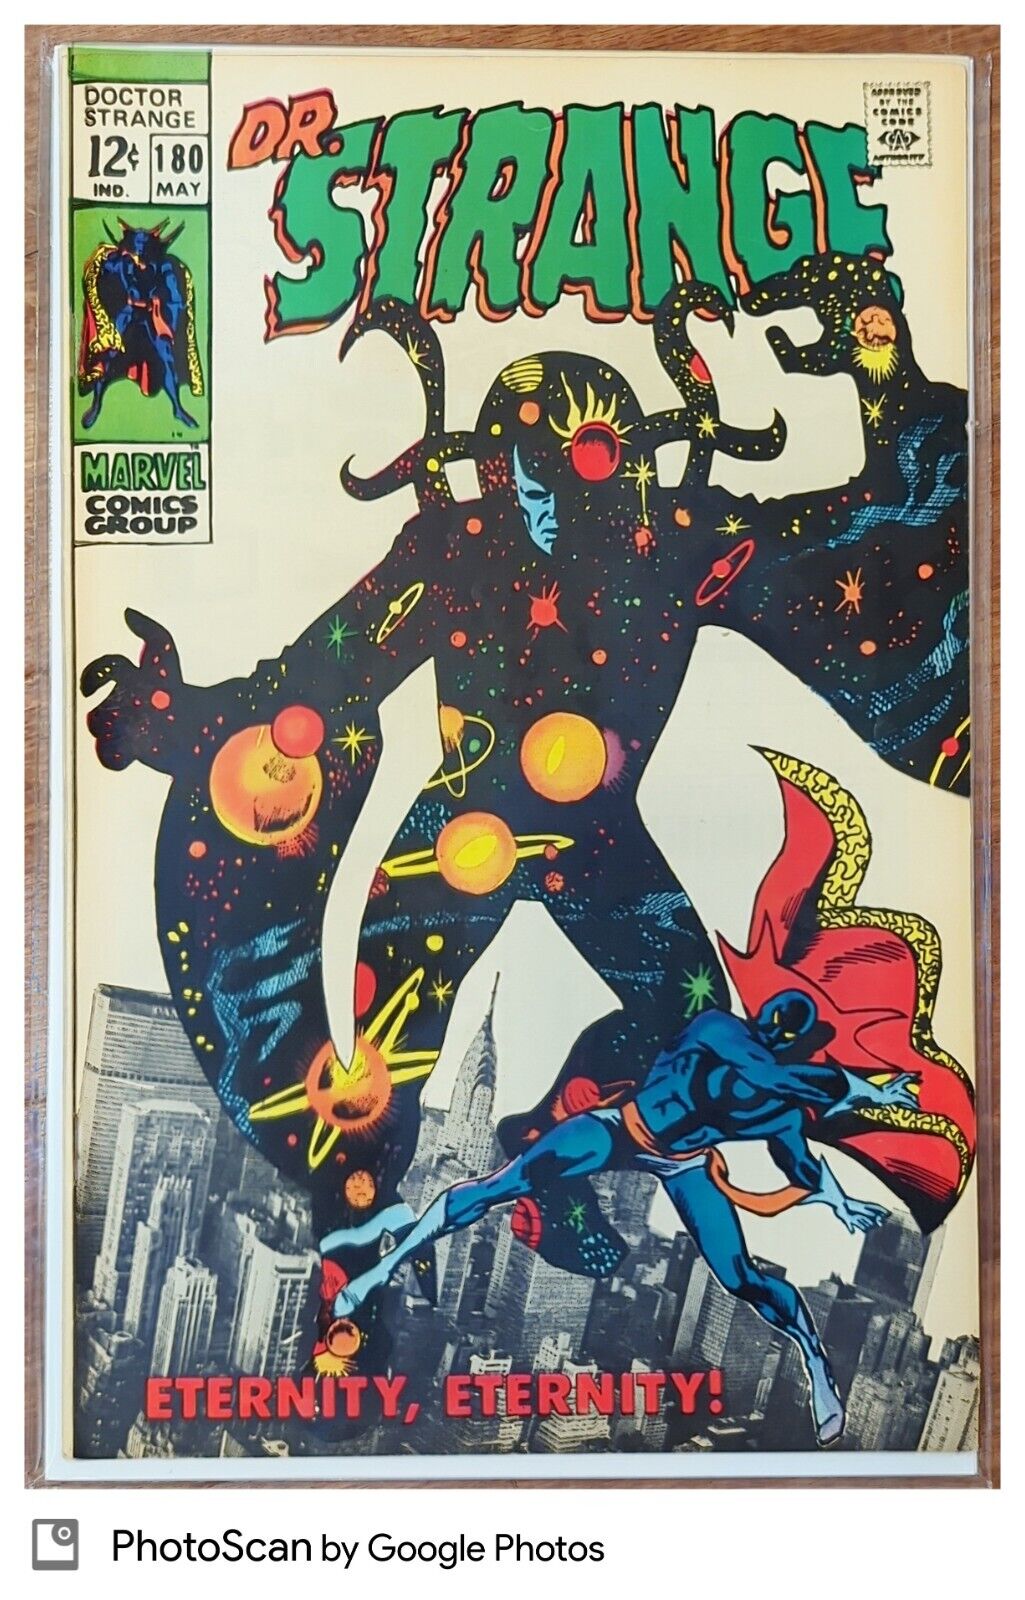 Doctor Strange 1968 Series Marvel Dr. Strange #180 Silver Age Comics Book